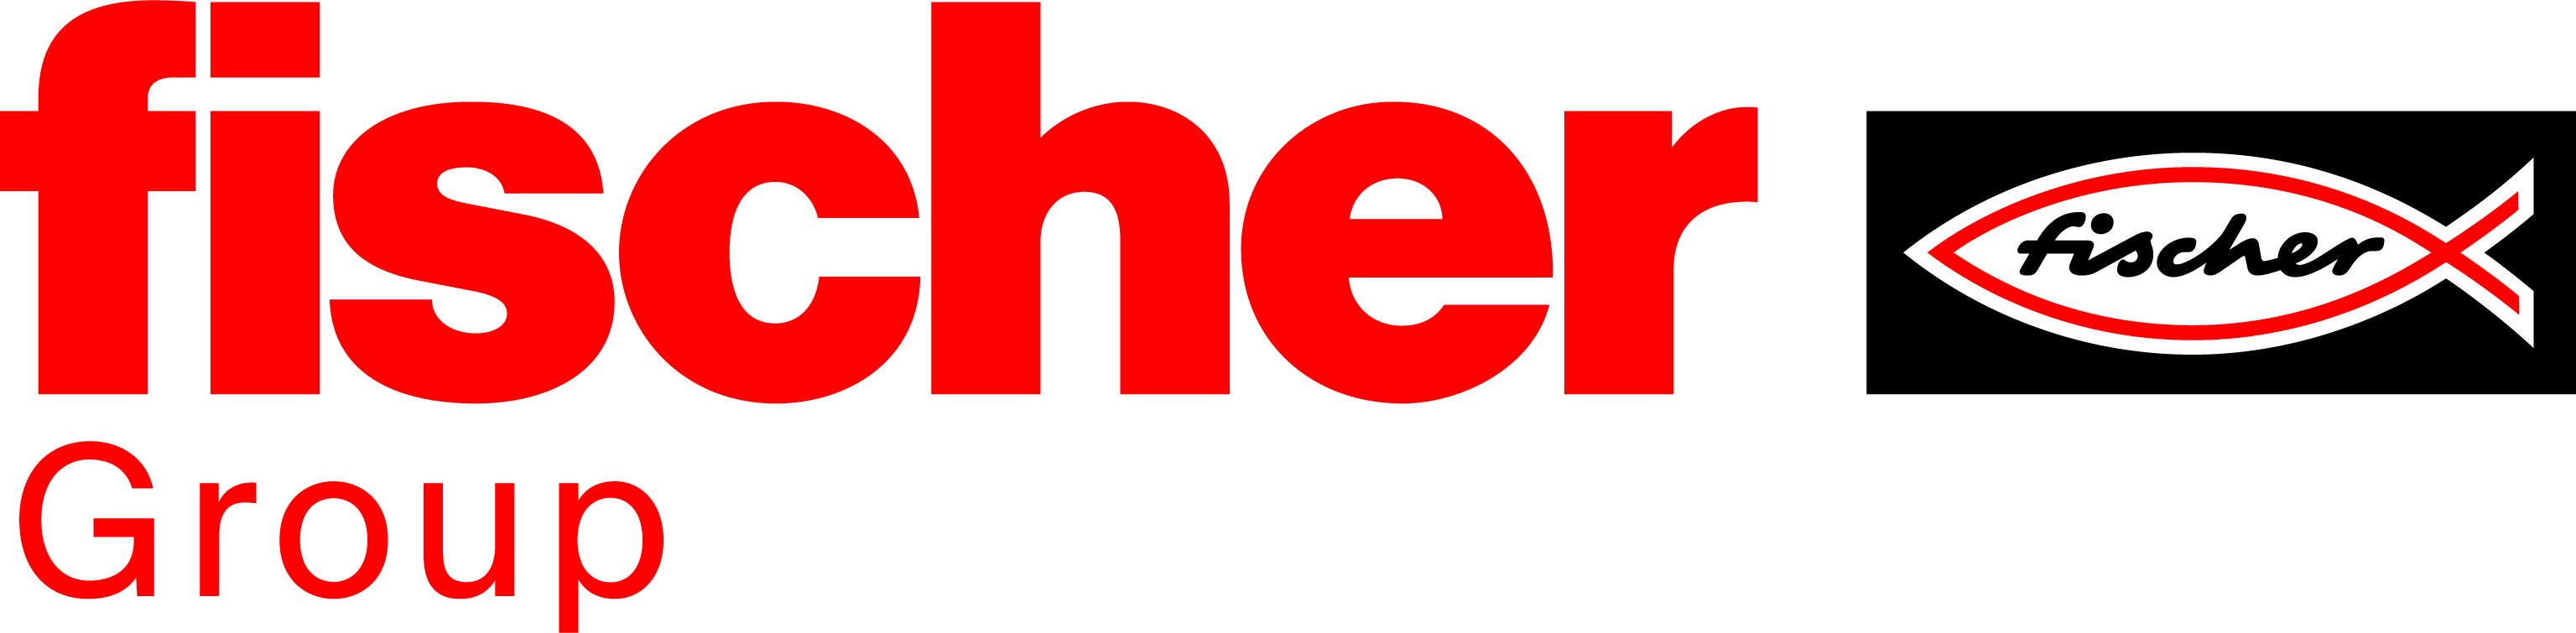 Fischerwerke logo